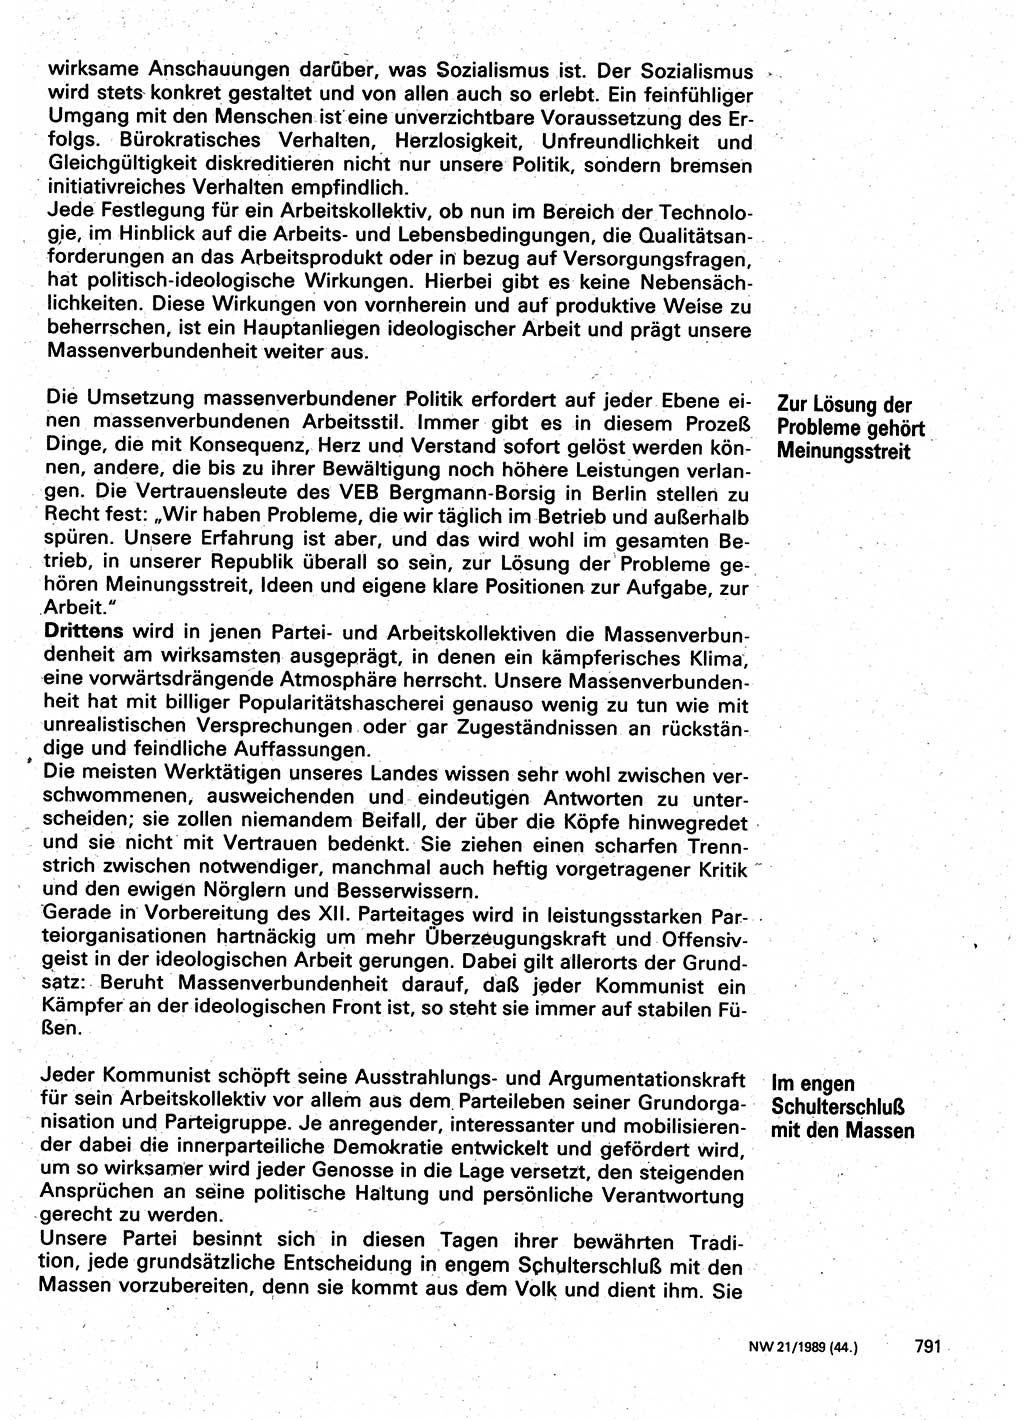 Neuer Weg (NW), Organ des Zentralkomitees (ZK) der SED (Sozialistische Einheitspartei Deutschlands) für Fragen des Parteilebens, 44. Jahrgang [Deutsche Demokratische Republik (DDR)] 1989, Seite 791 (NW ZK SED DDR 1989, S. 791)